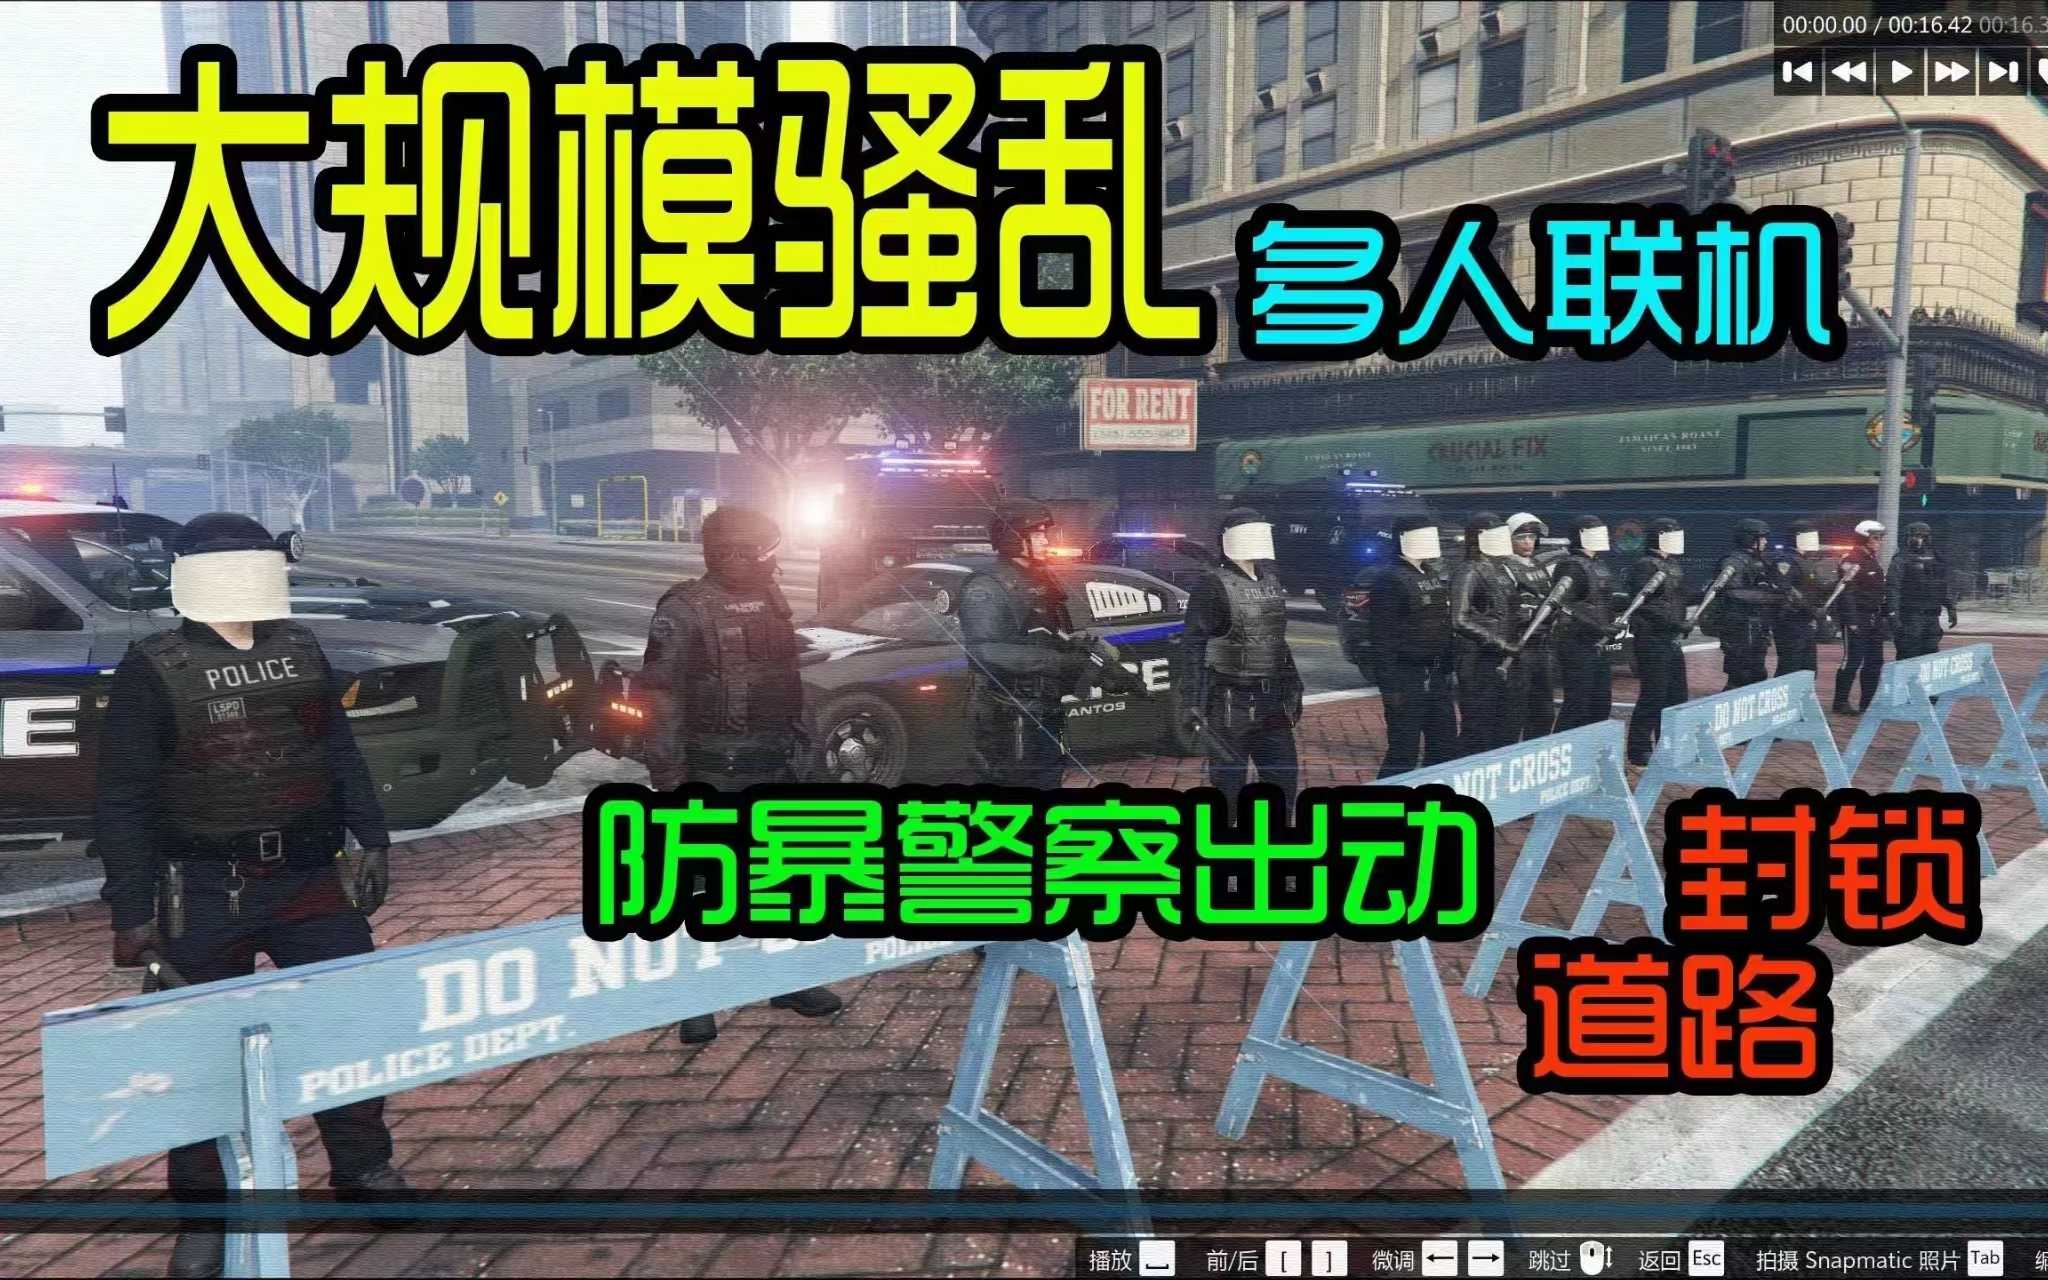 【分享】GTA5-大型MOD合集更新-侠盗猎车MOD合集